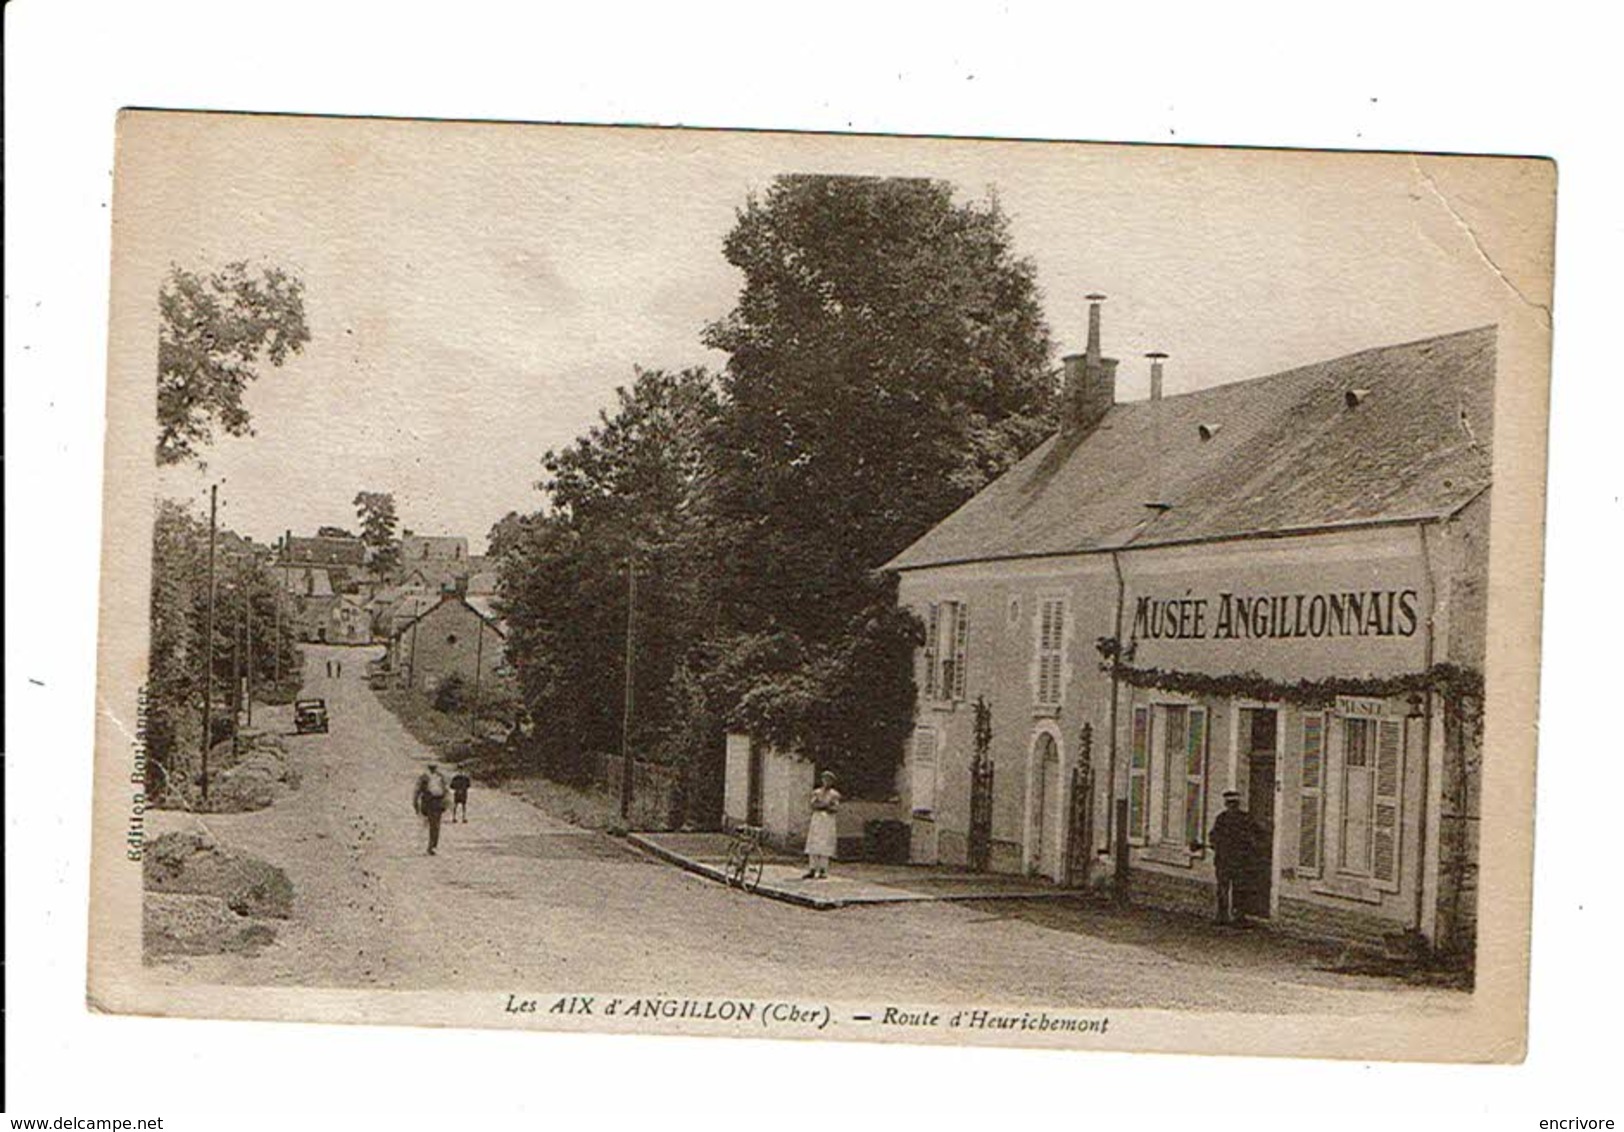 Cpa Les AIX D ANGILLON Route D' Heurichement Musée Angillonnais éd Boulanger - Les Aix-d'Angillon